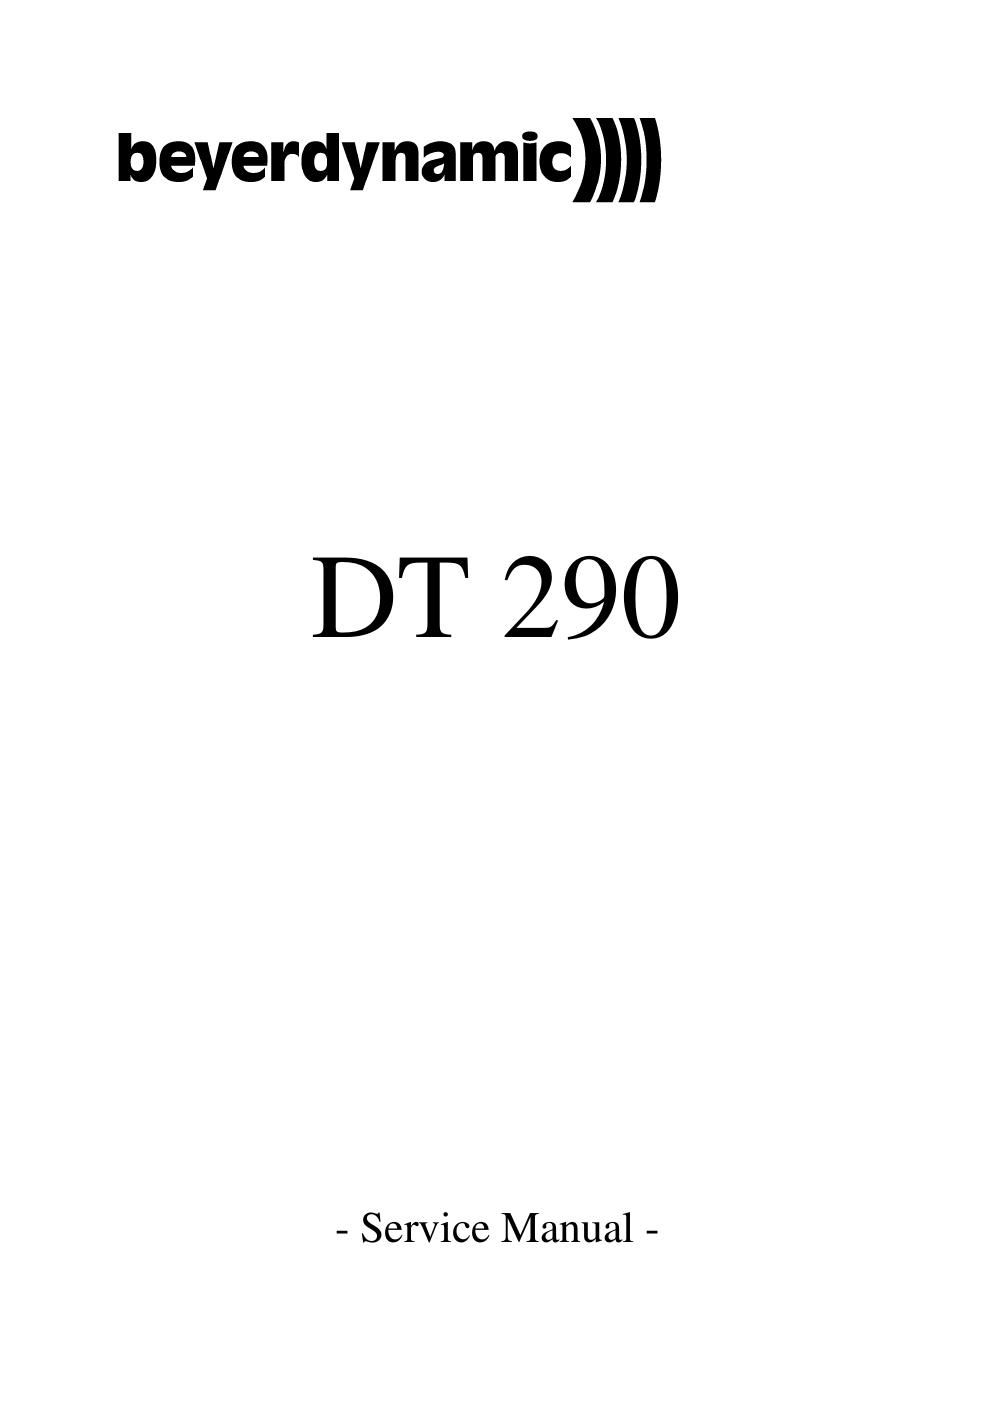 beyerdynamic dt 290 service manual